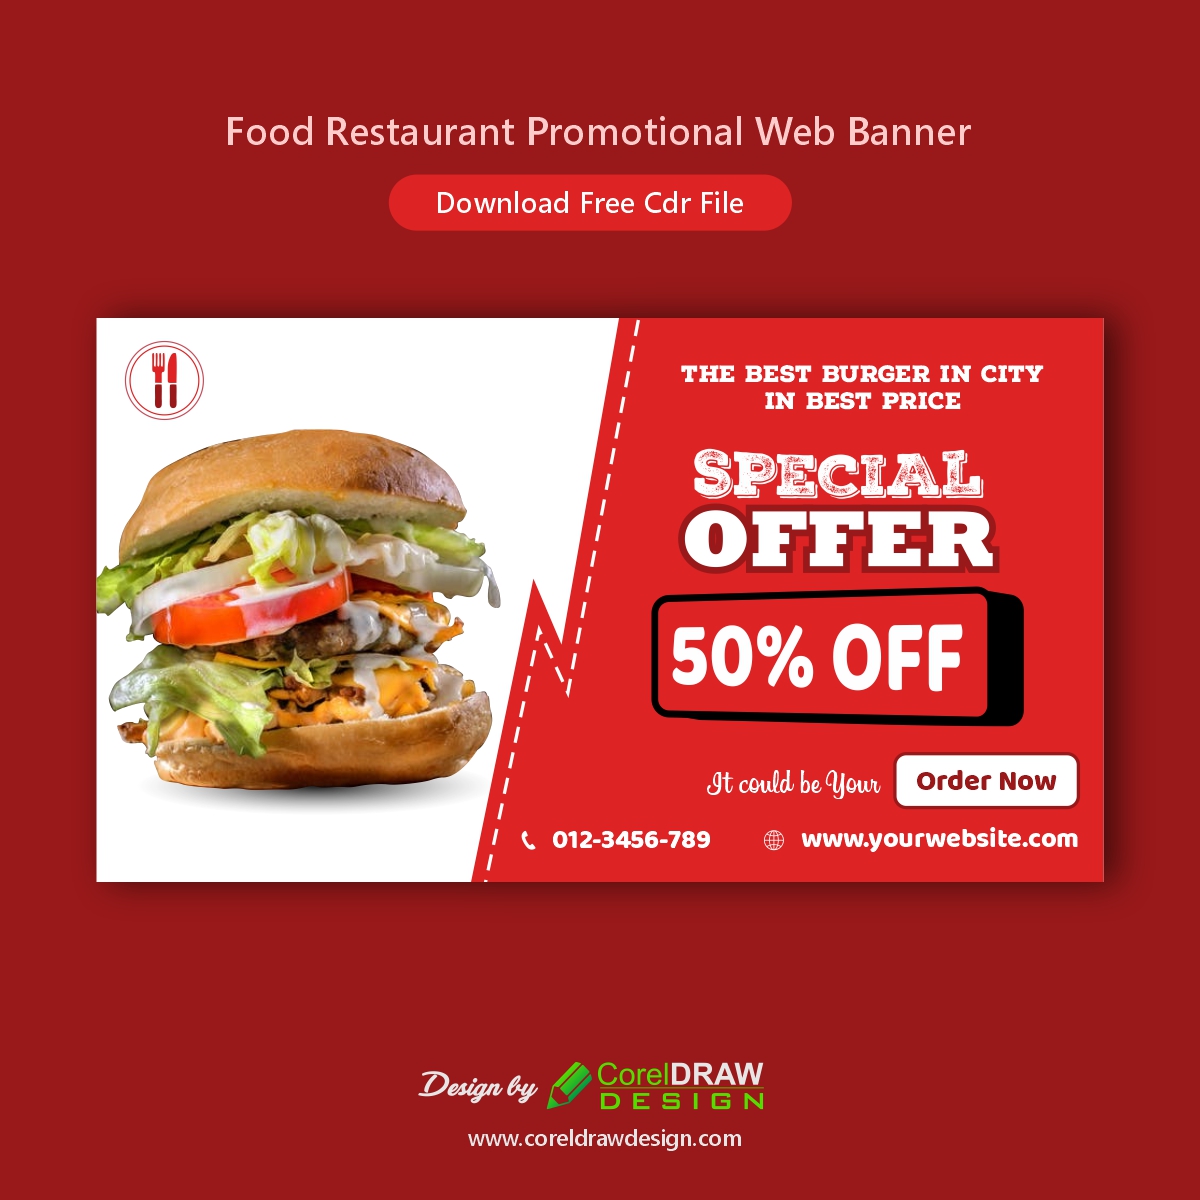 Food Restaurant Promotional Web Banner 